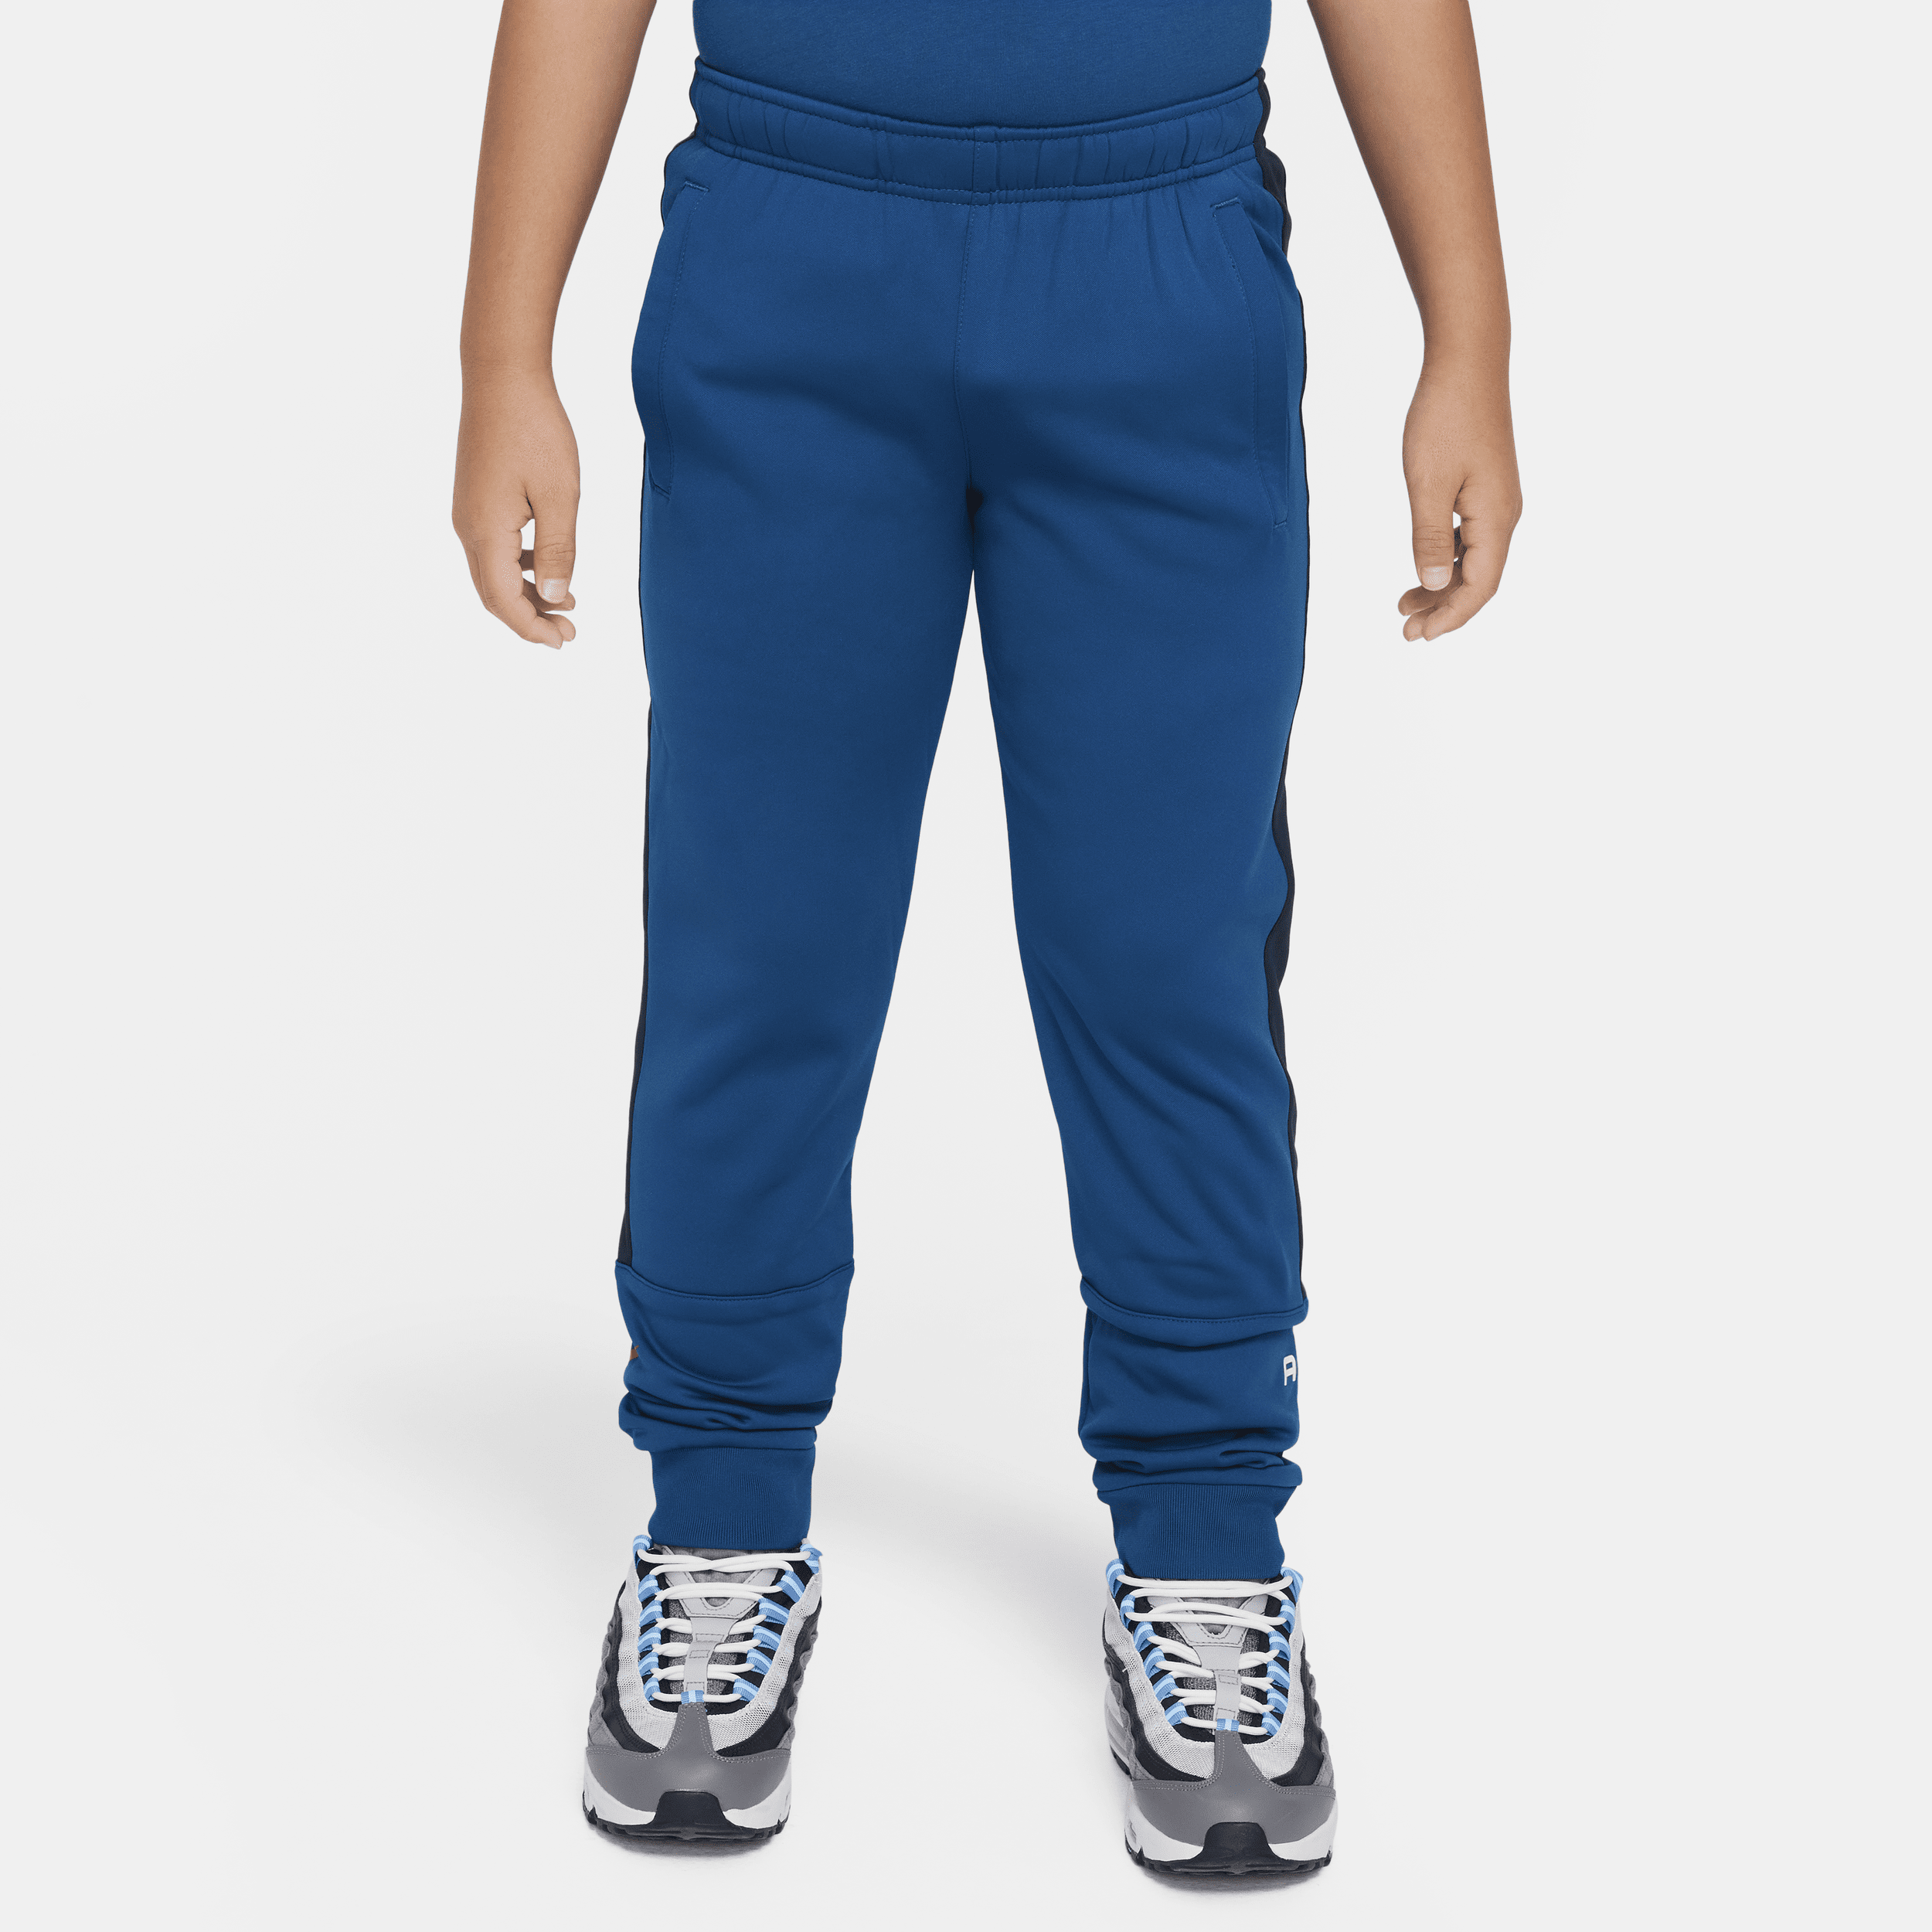 Nike Air joggingbroek voor jongens - Blauw